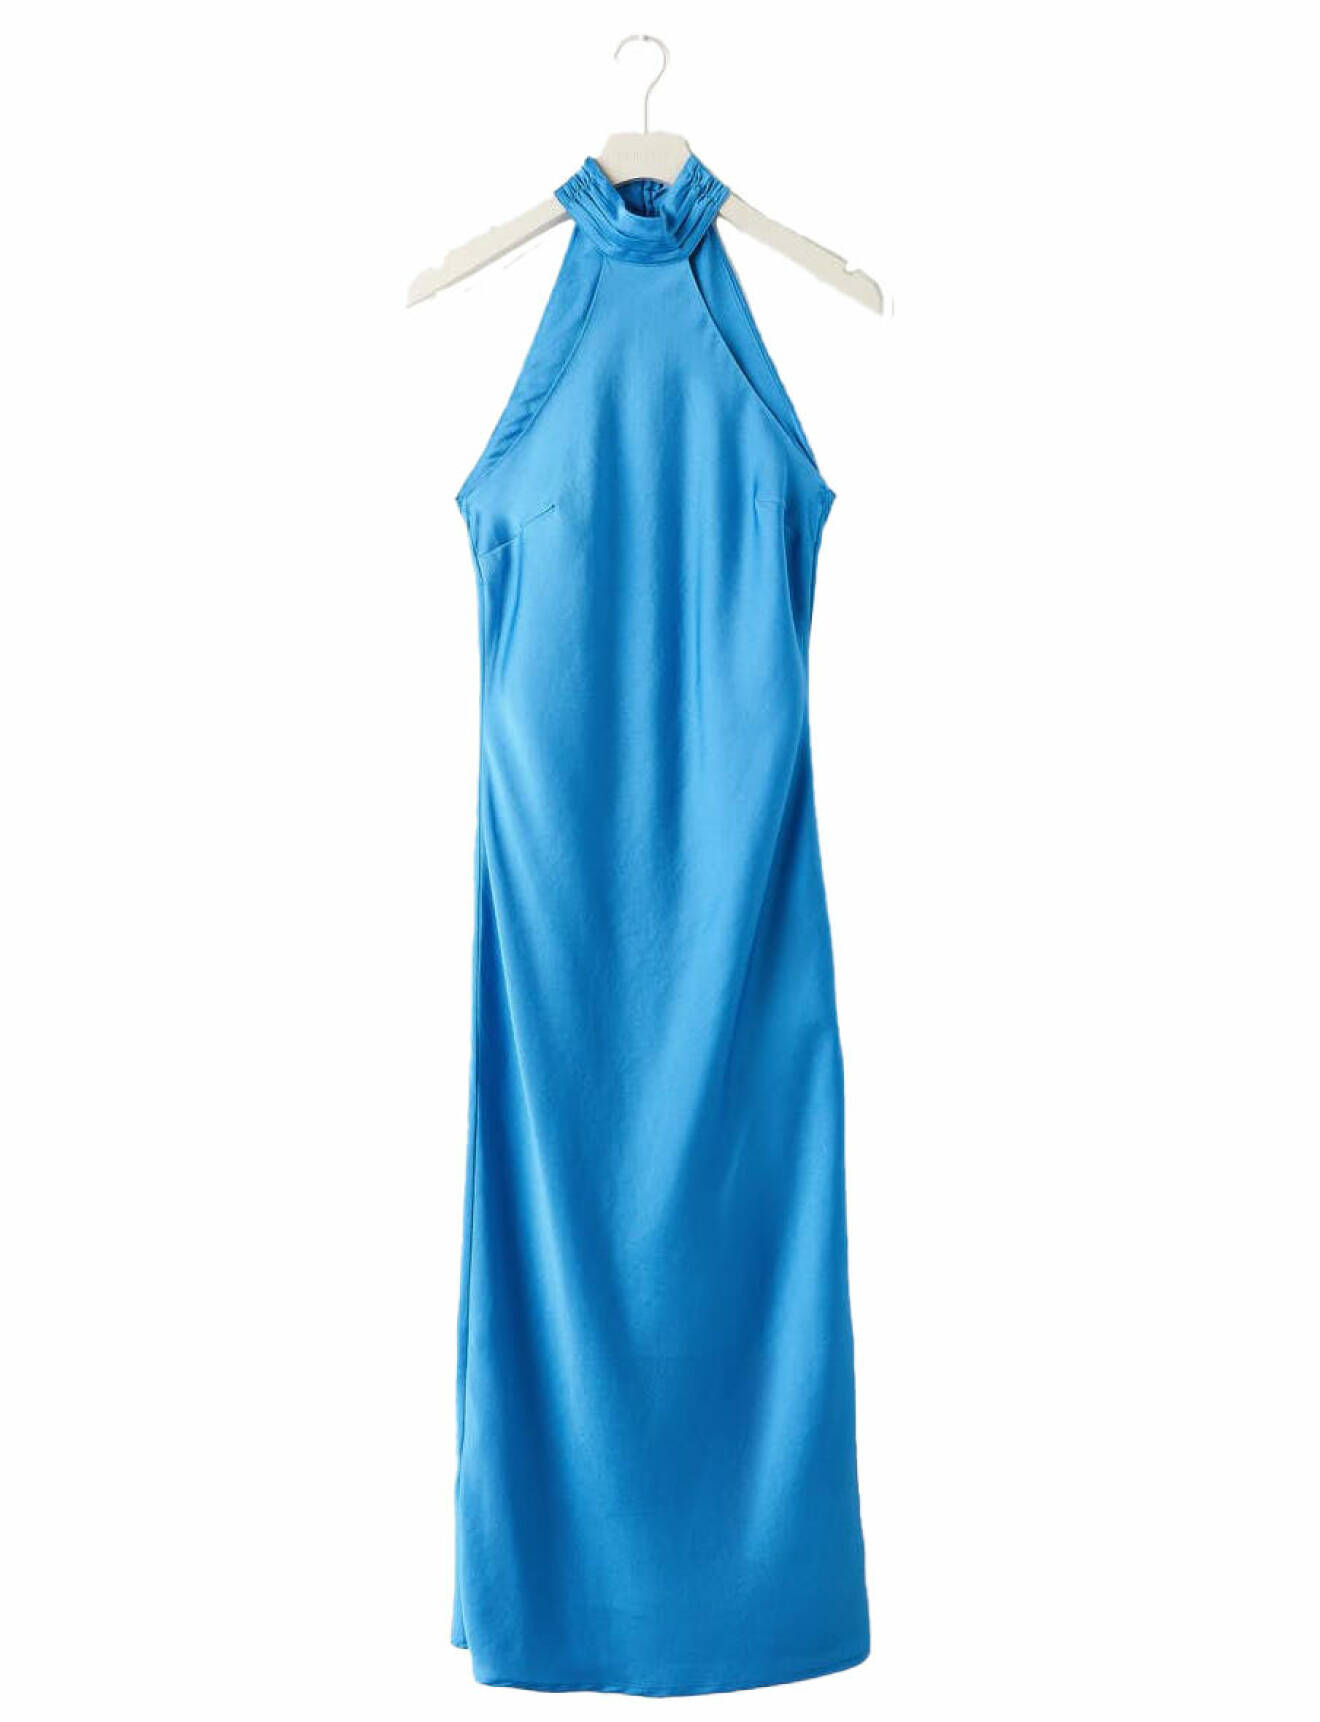 Blå klänning med öppen rygg.